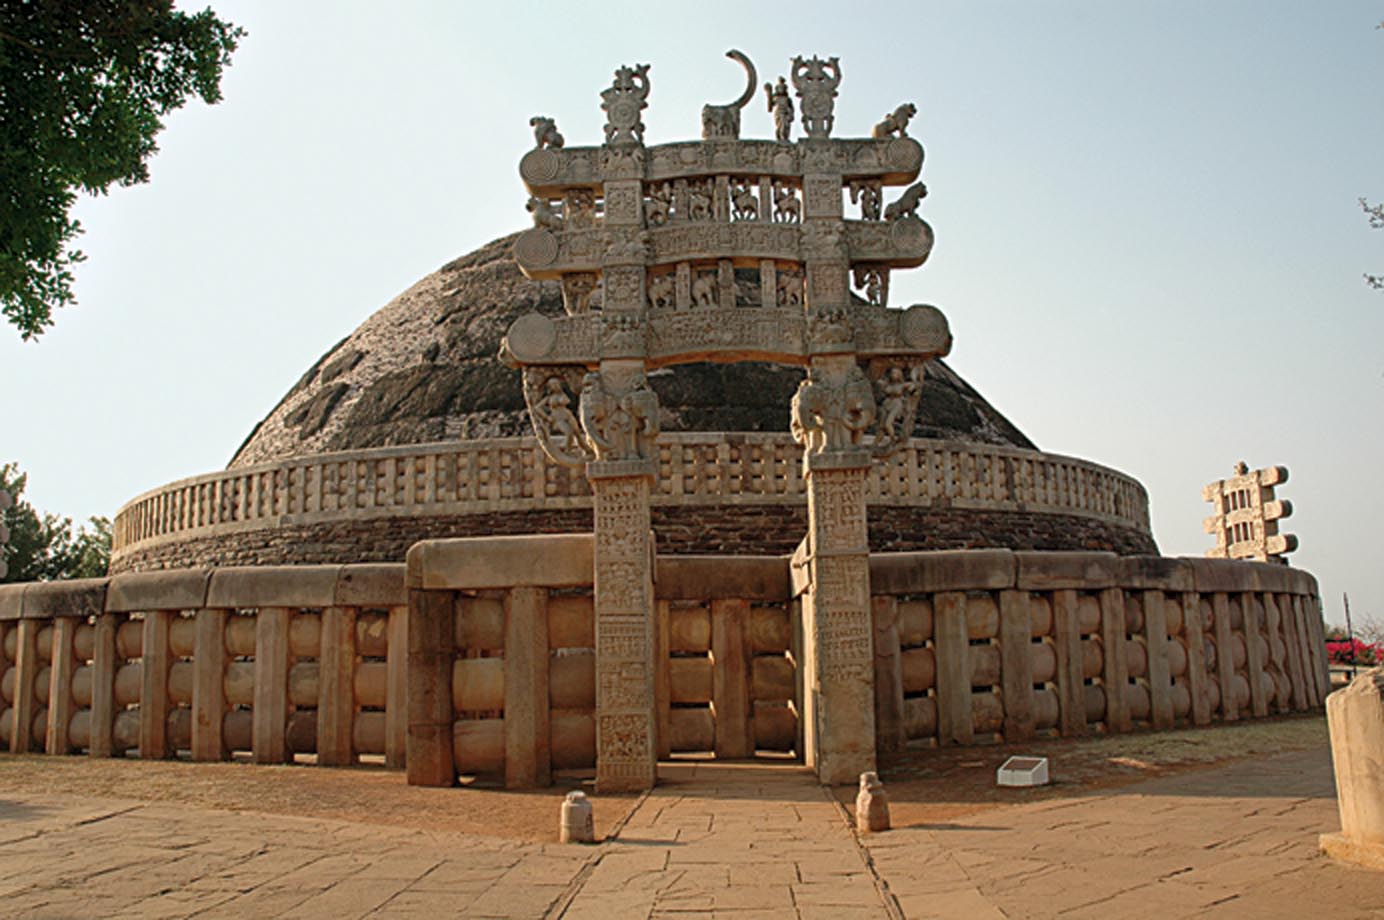 Le grand stoupa de Sāñcī, situé dans l’actuel Madhya Pradesh, fut commandé par l’Empereur Aśoka et l’on pense qu’il contient une des reliques originales du Bouddha Sākyamuni. Le stoupa garde également vivante la présence du Bouddha grâce aux sculptures qui représentent les événements de sa vie. Photo de Marc Shandro.